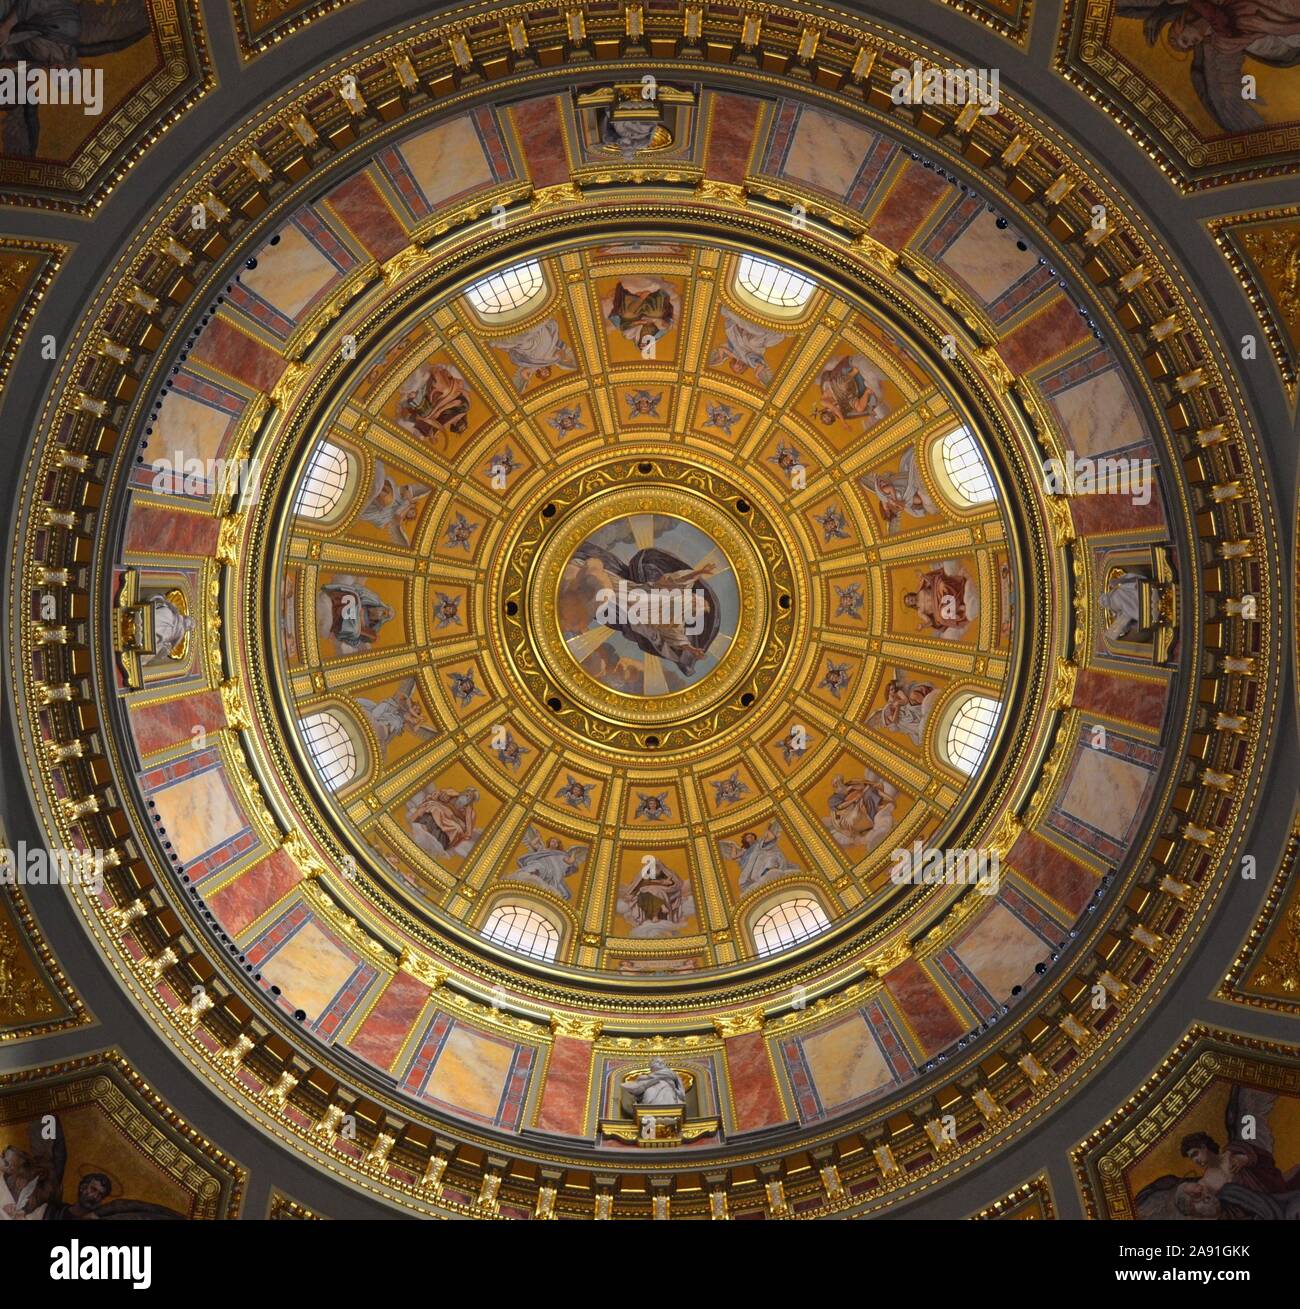 La pintura al fresco en la cúpula de una iglesia catedral católica en color con imágenes religiosas de santos y escenas de la Biblia en color Foto de stock